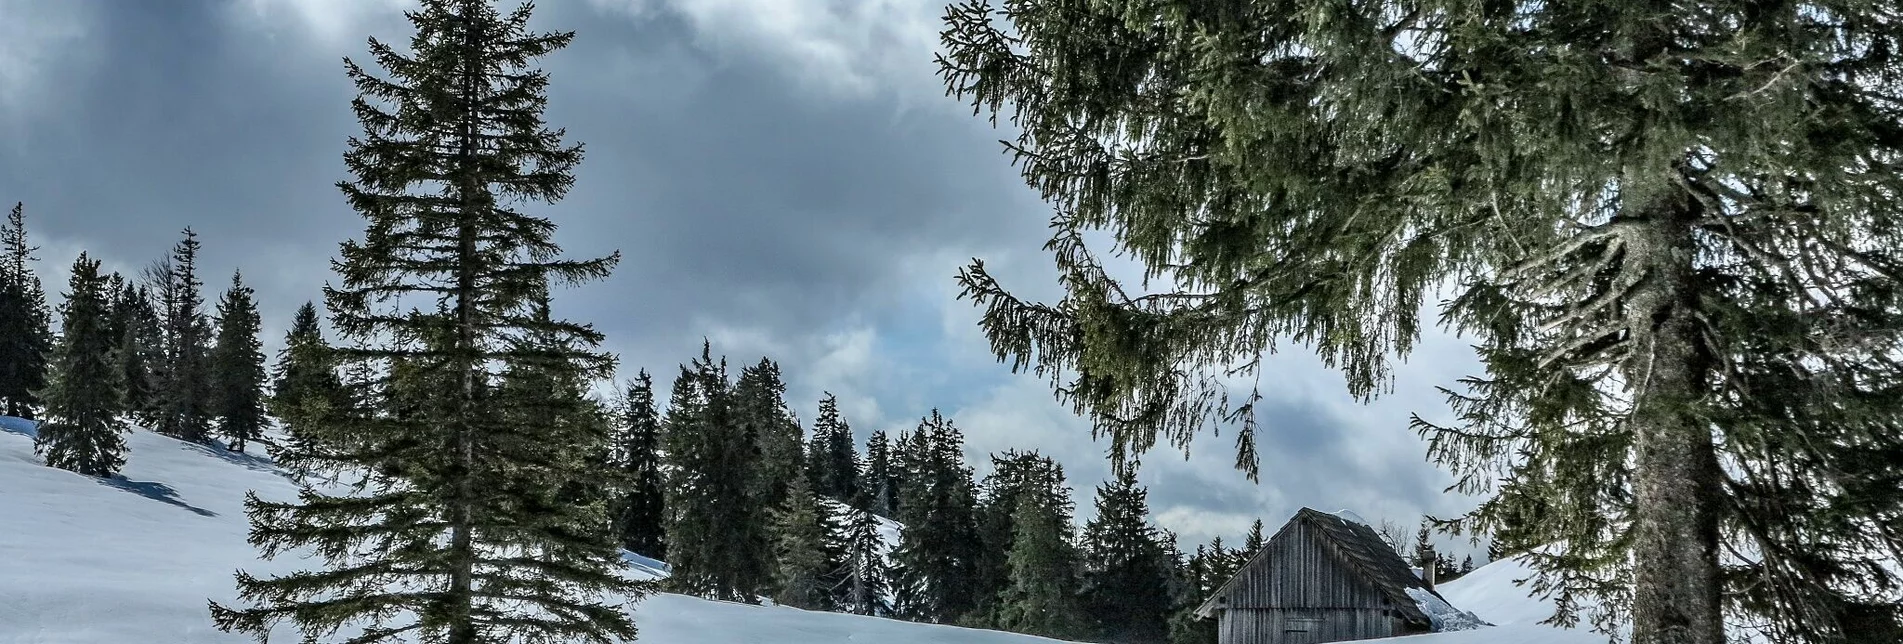 Skitour Buchberg über die Goss - Touren-Impression #1 | © TV Gesäuse